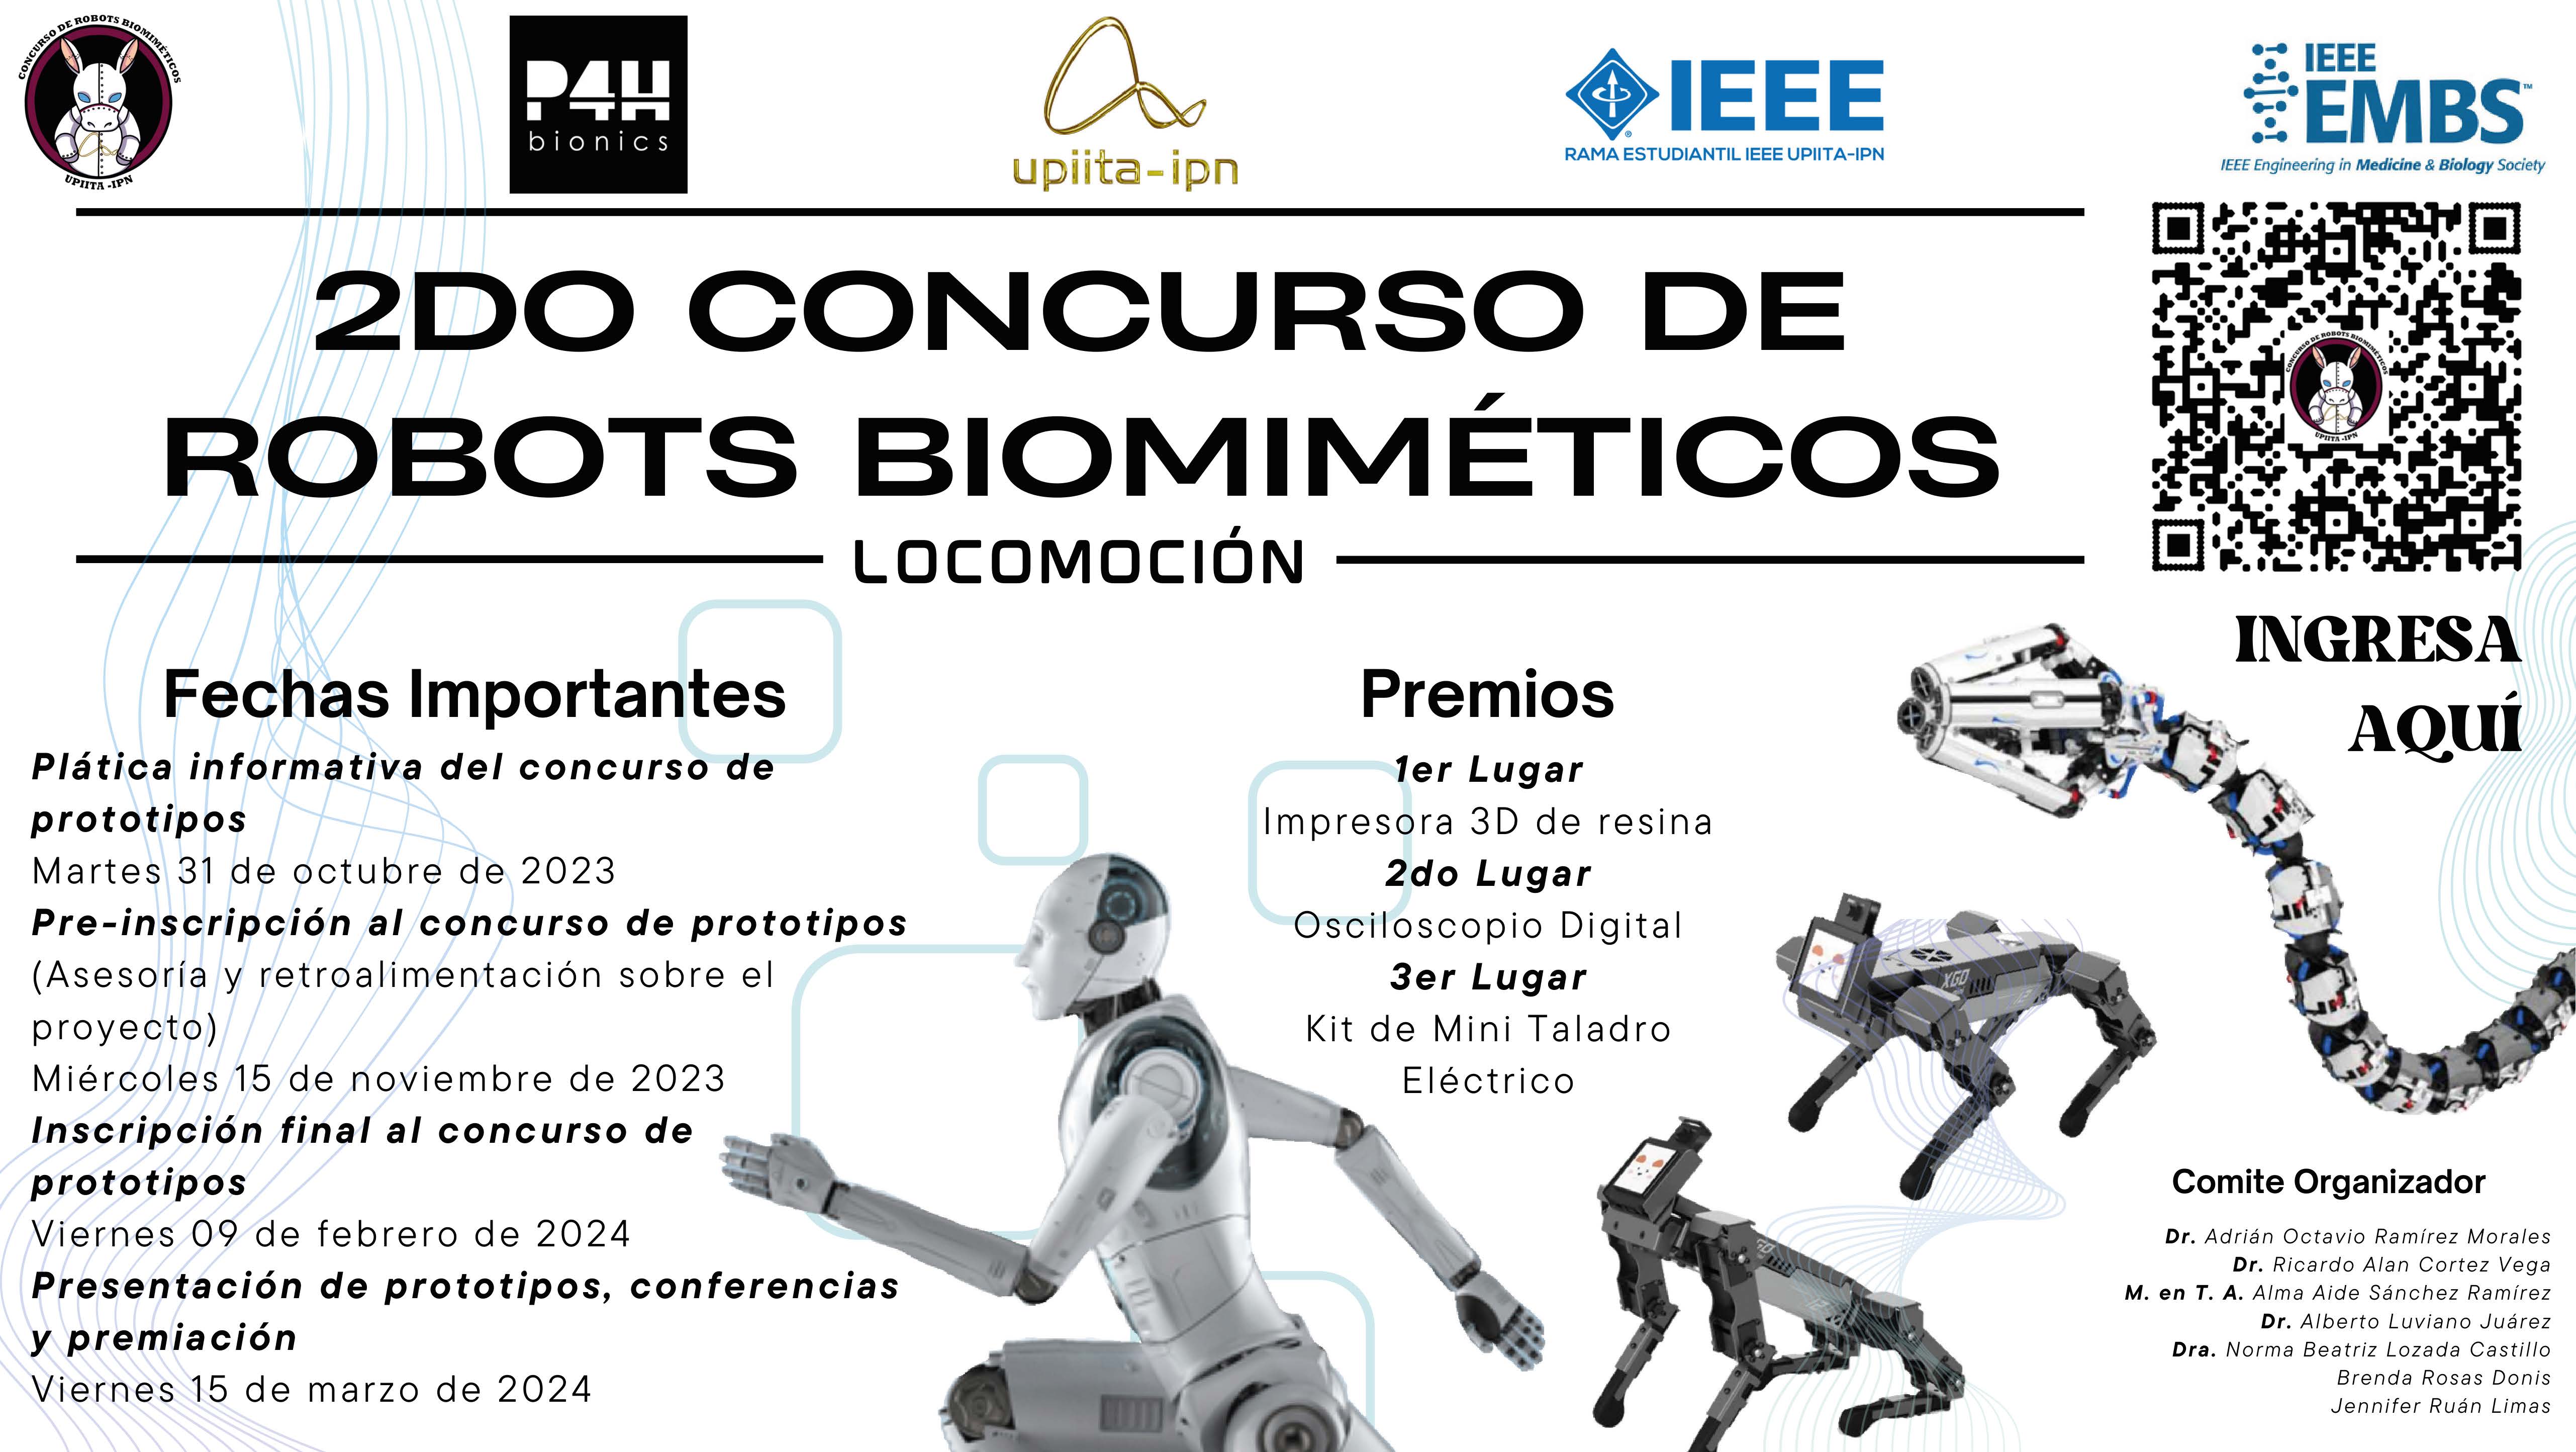 2do Concurso de Robots Biomiméticos